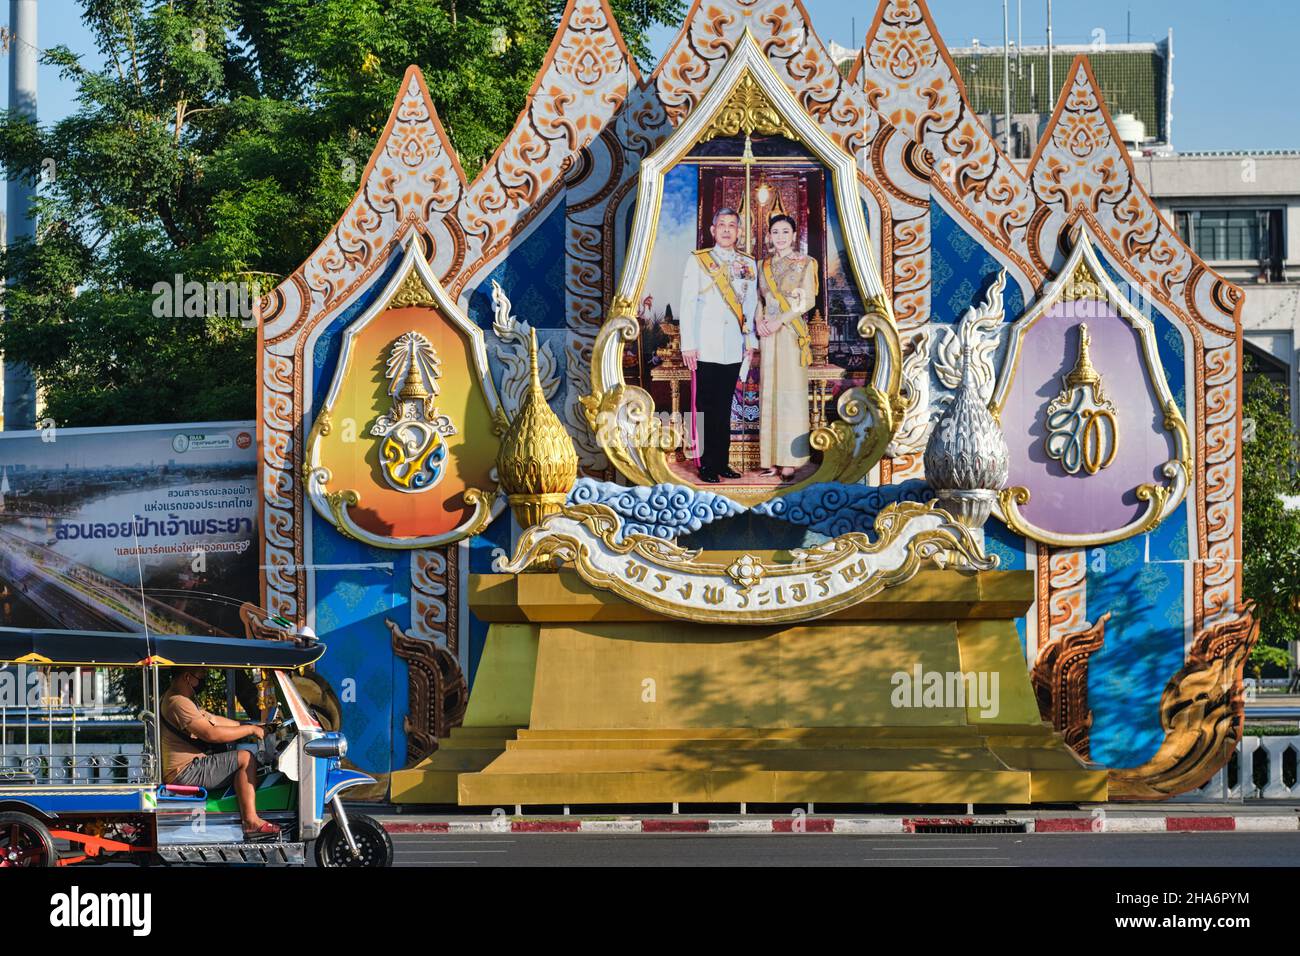 Un tuk-tuk (taxi à 3 roues) passe devant une grande décoration de rue avec le roi Maha Vajiralongkorn et la reine Suthida; Bangkok, Thaïlande Banque D'Images